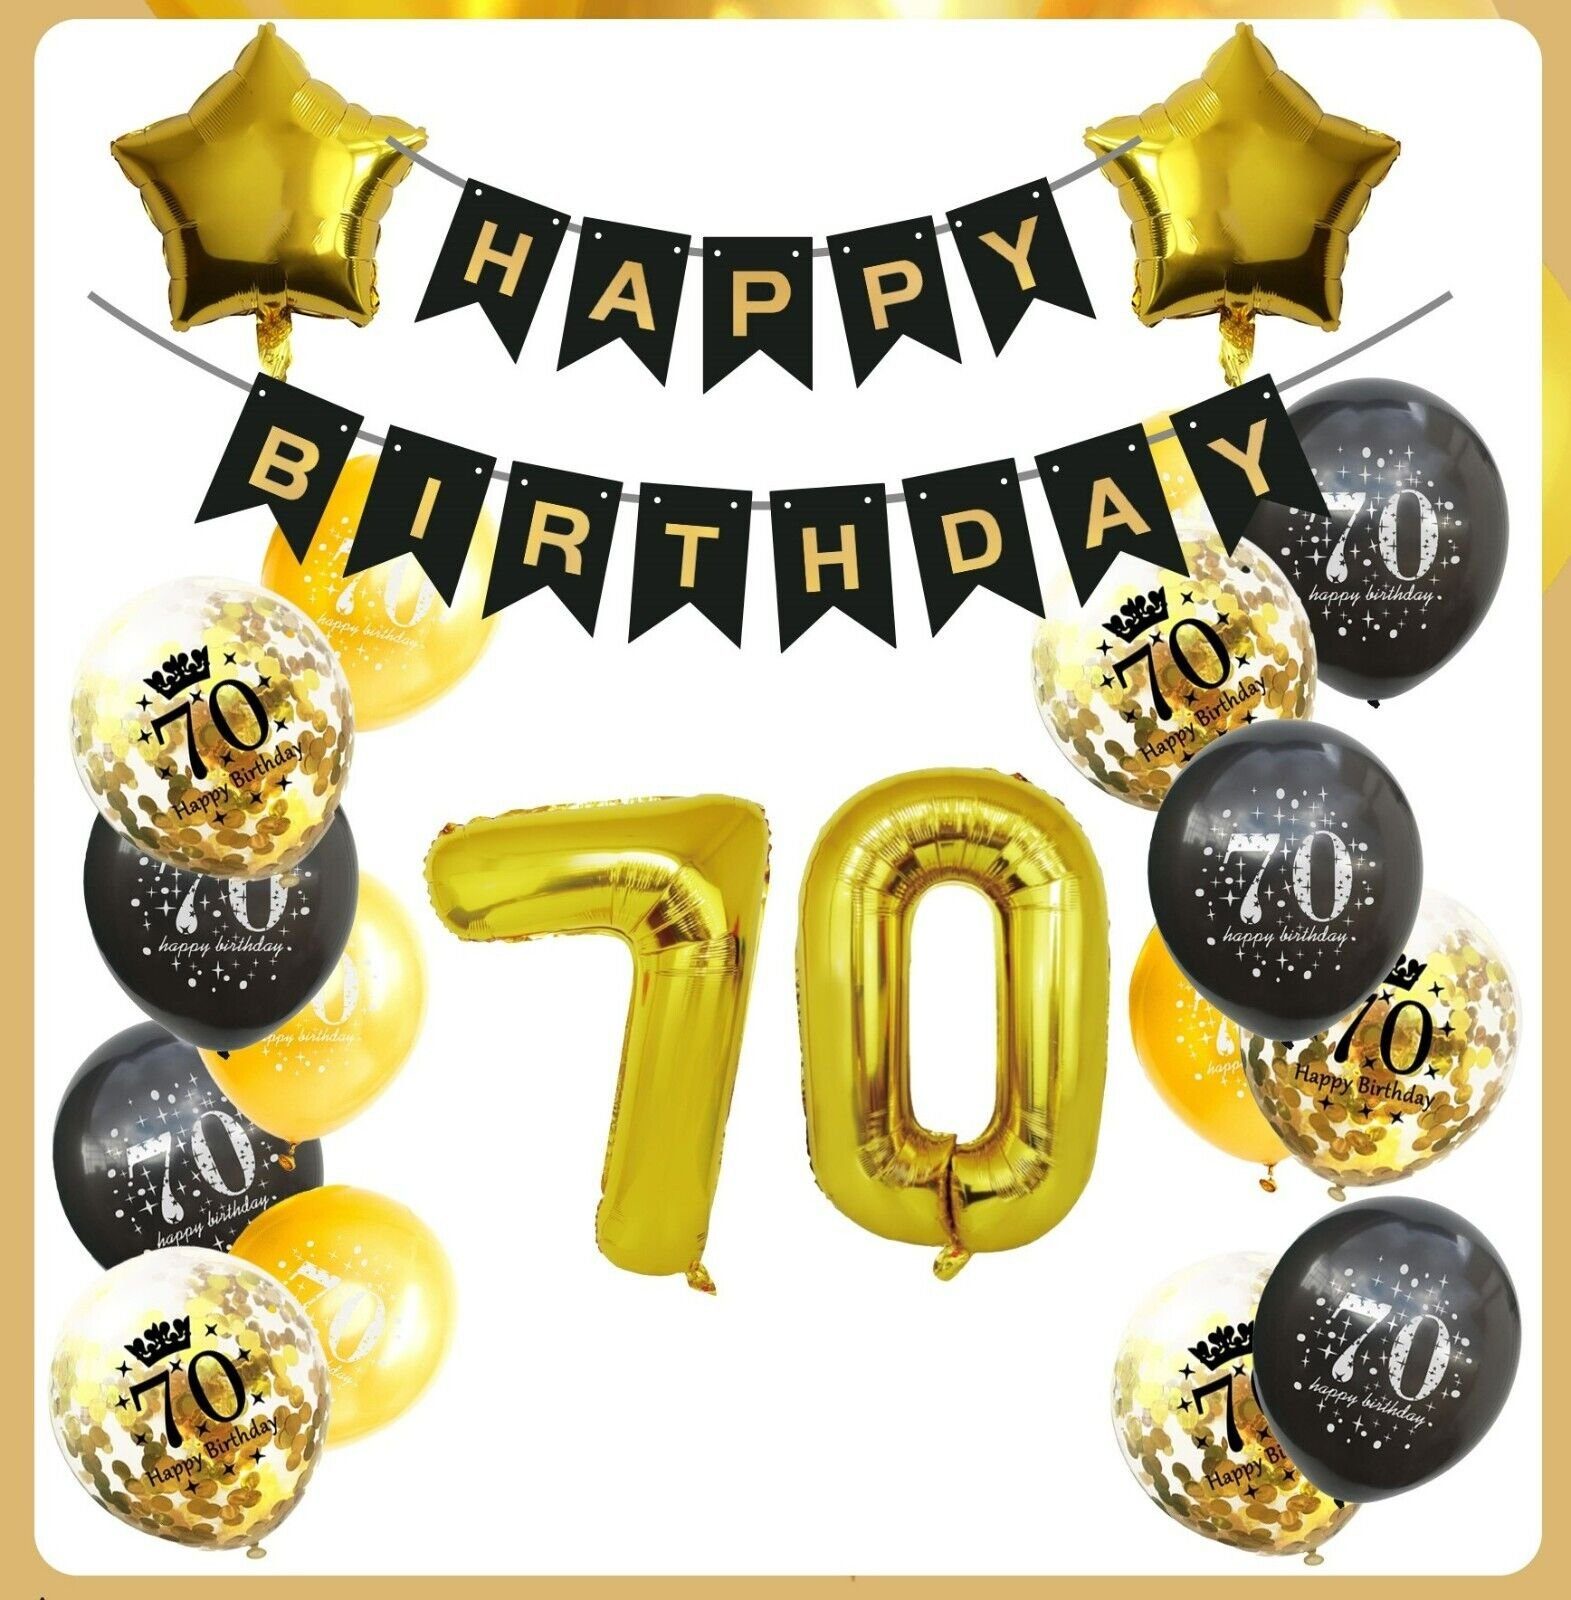 Montegoni Aufblasbares Partyzubehör Geburtstag Deko Set, Girlande+Zahlen+Luftballons Schwarz Gold Konfetti, 20 Teilig Set: Girlande, Zahlen, Stern, Konfetti, Latex Ballons